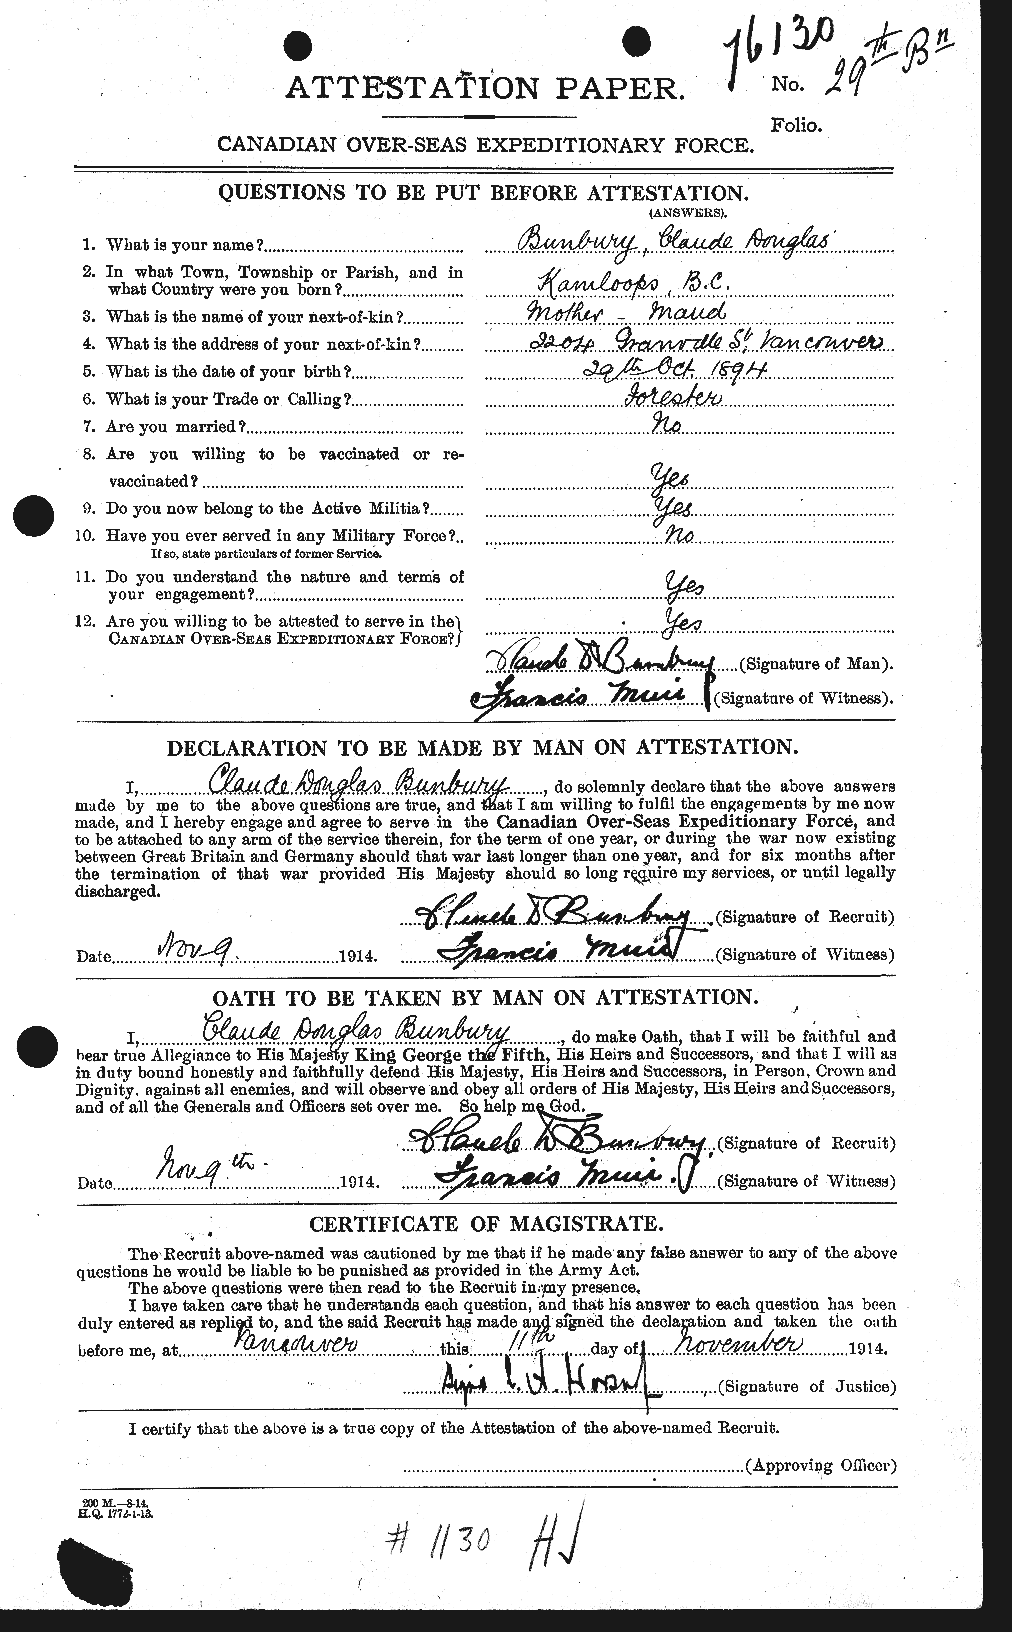 Dossiers du Personnel de la Première Guerre mondiale - CEC 269885a